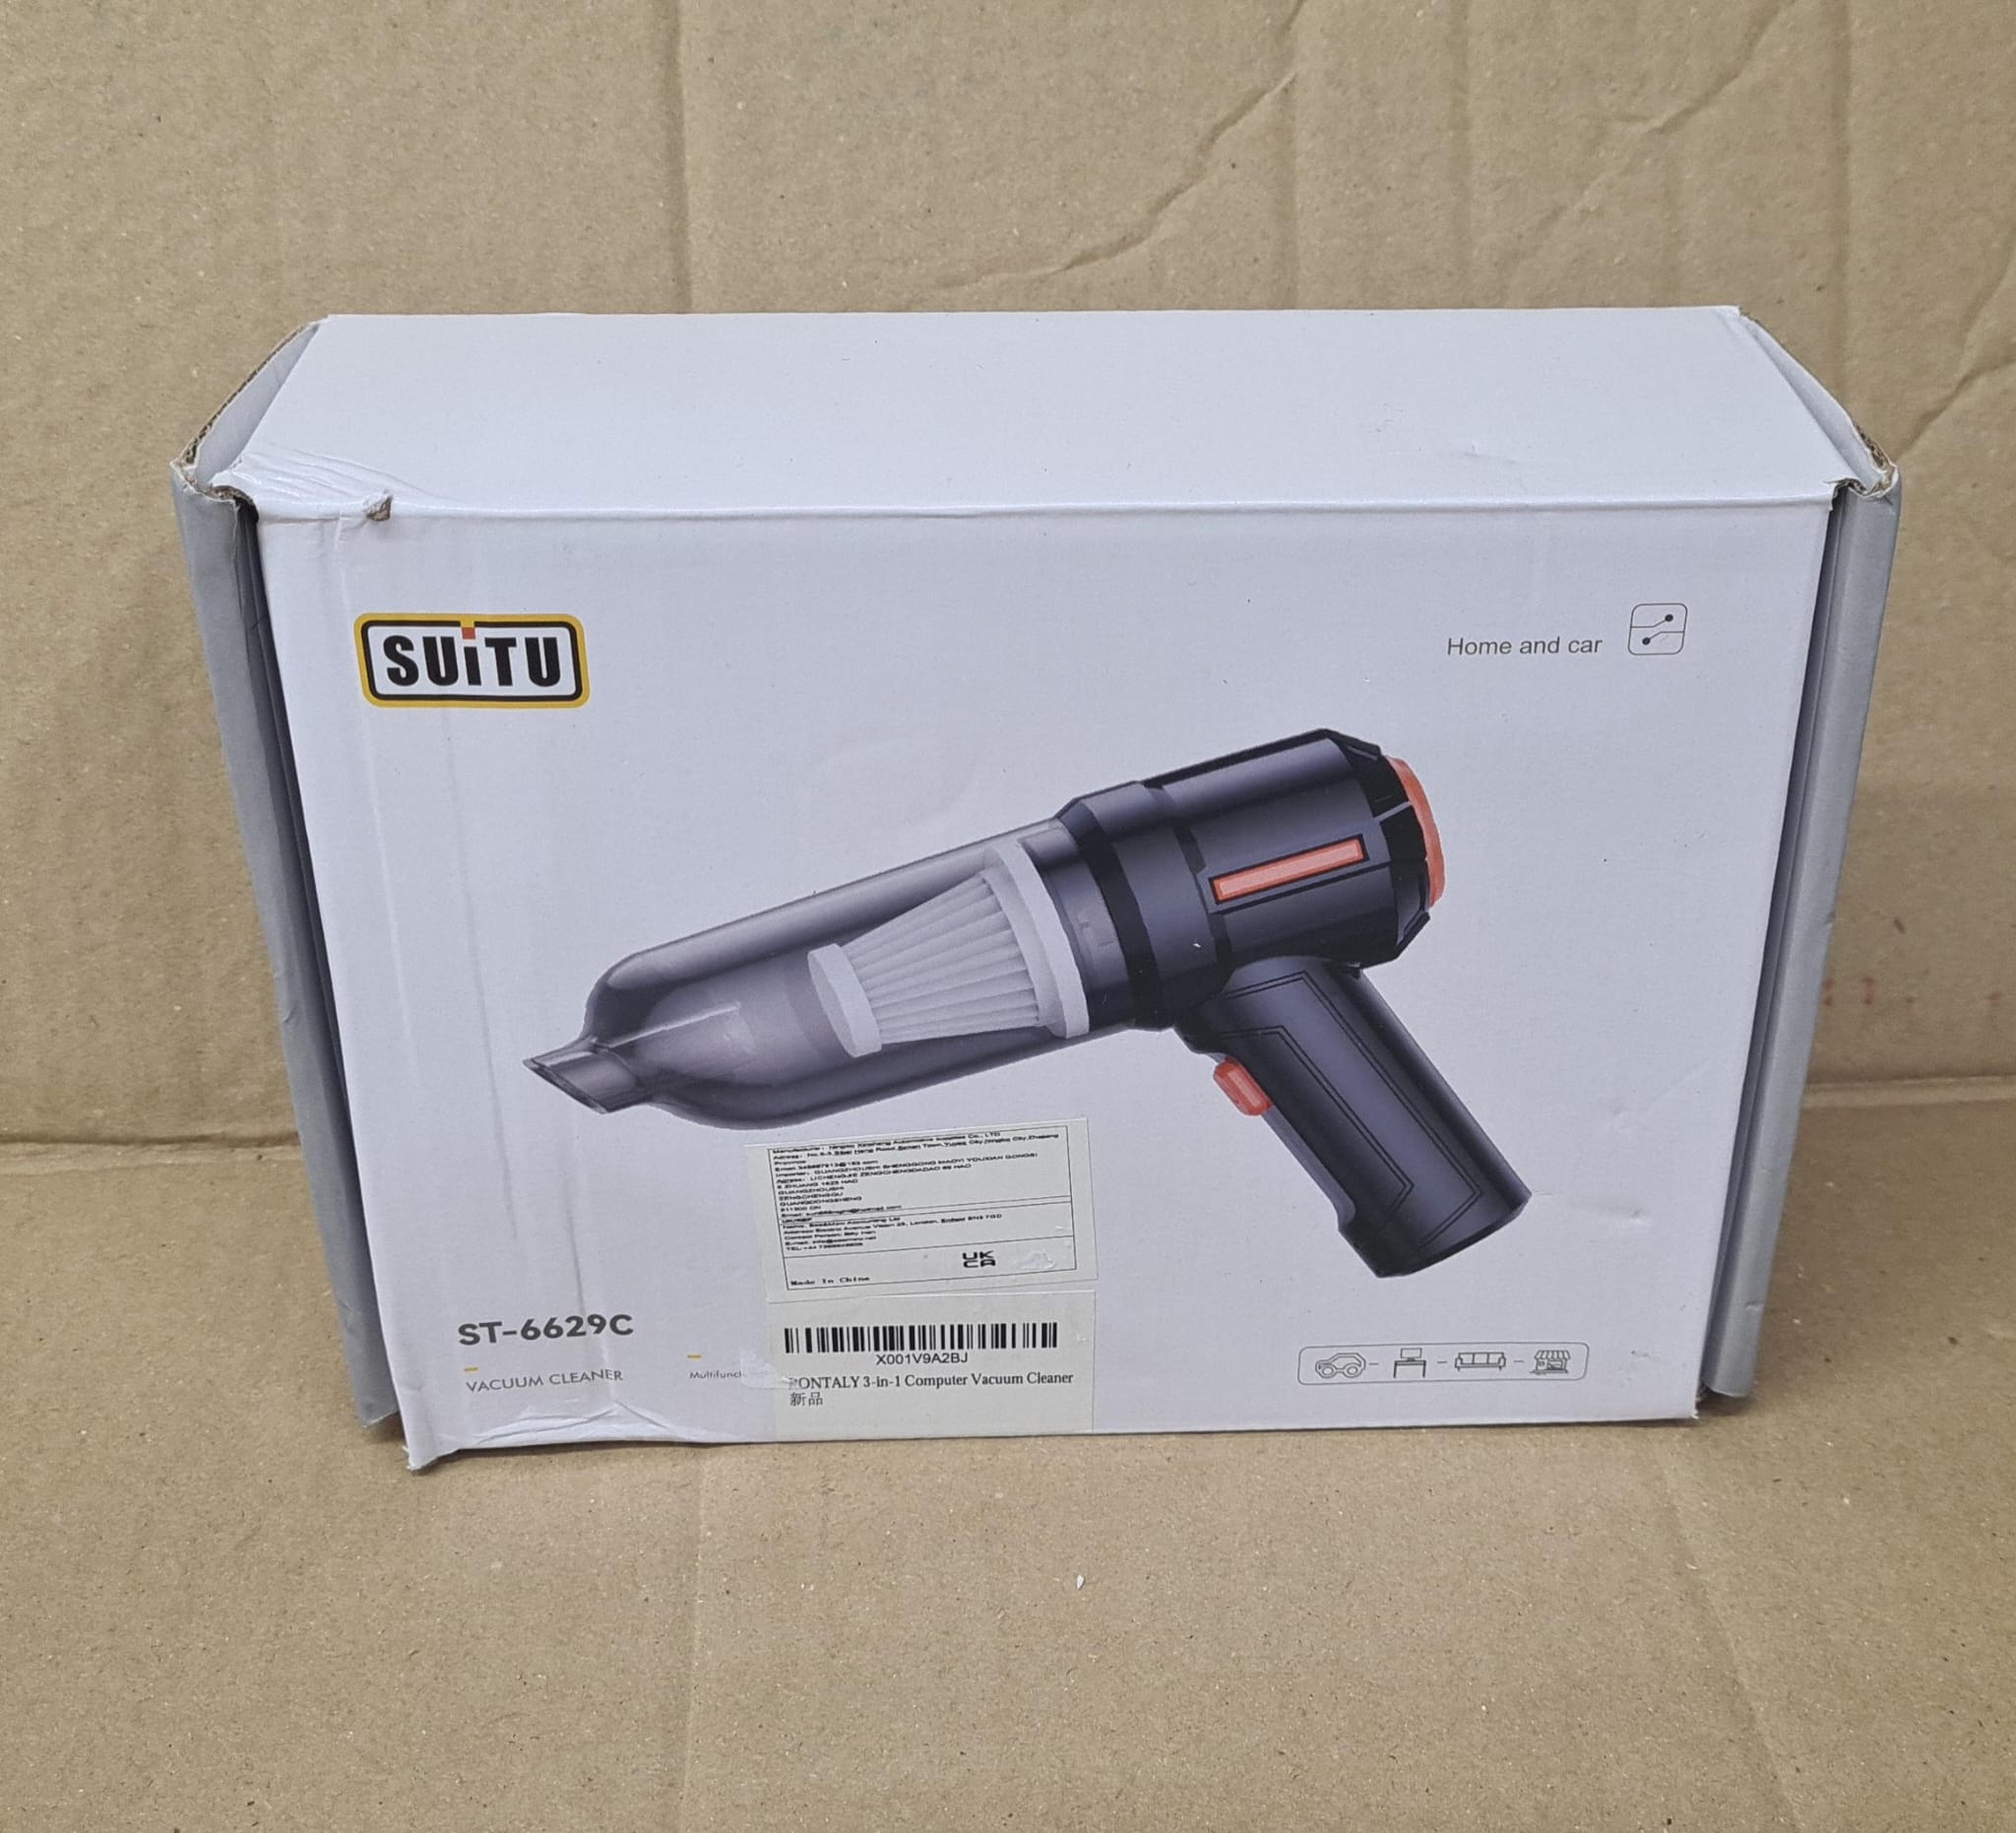 Suitu-Hand Held Mini Vacuum Cleaner- ST-6629 -9320